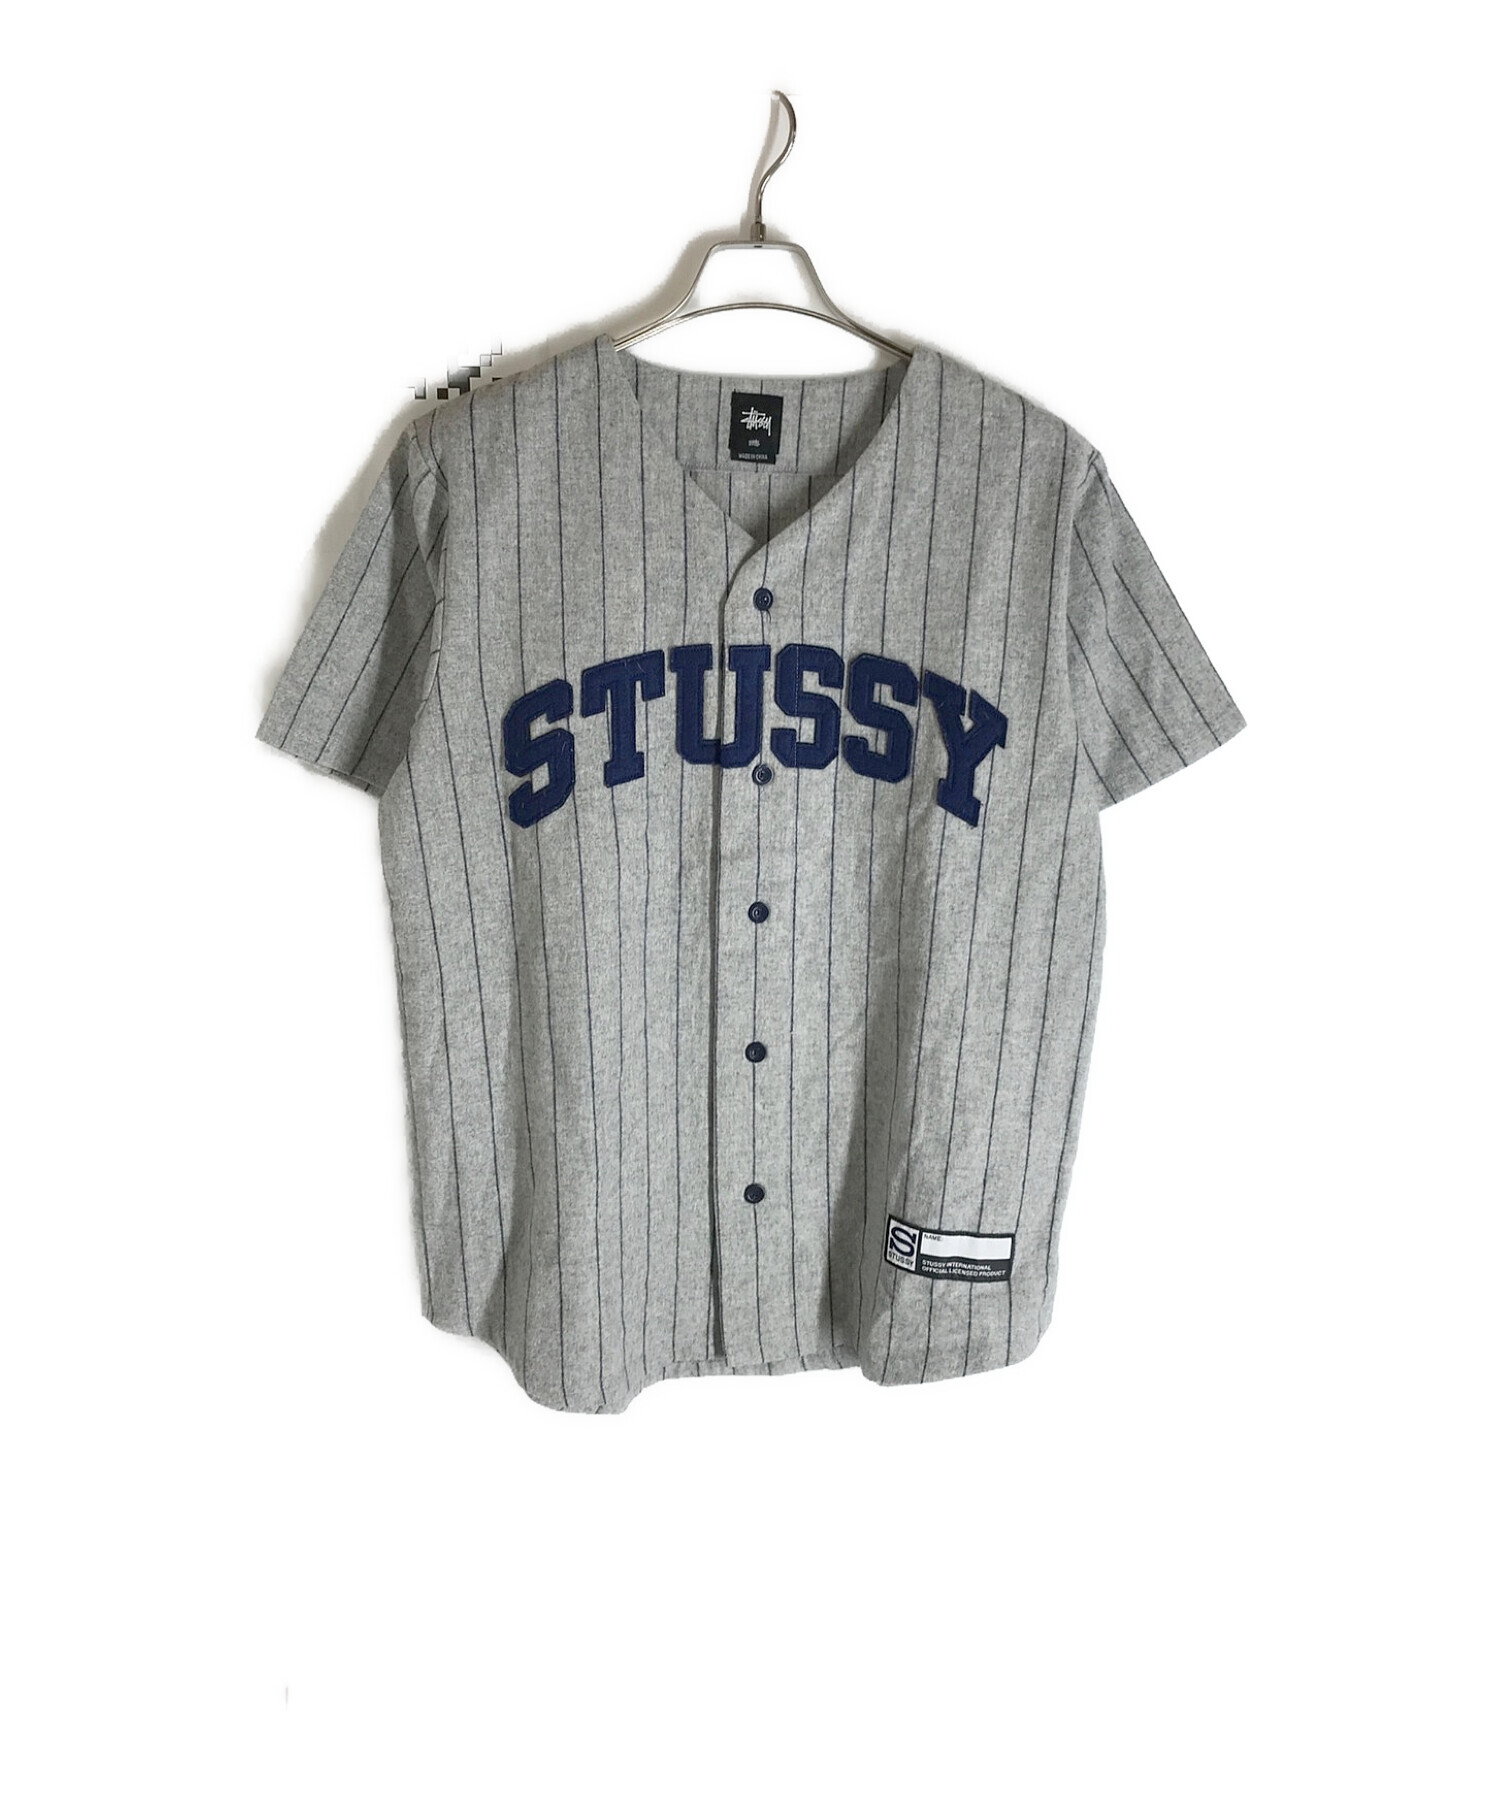 Stussy ベースボールシャツ